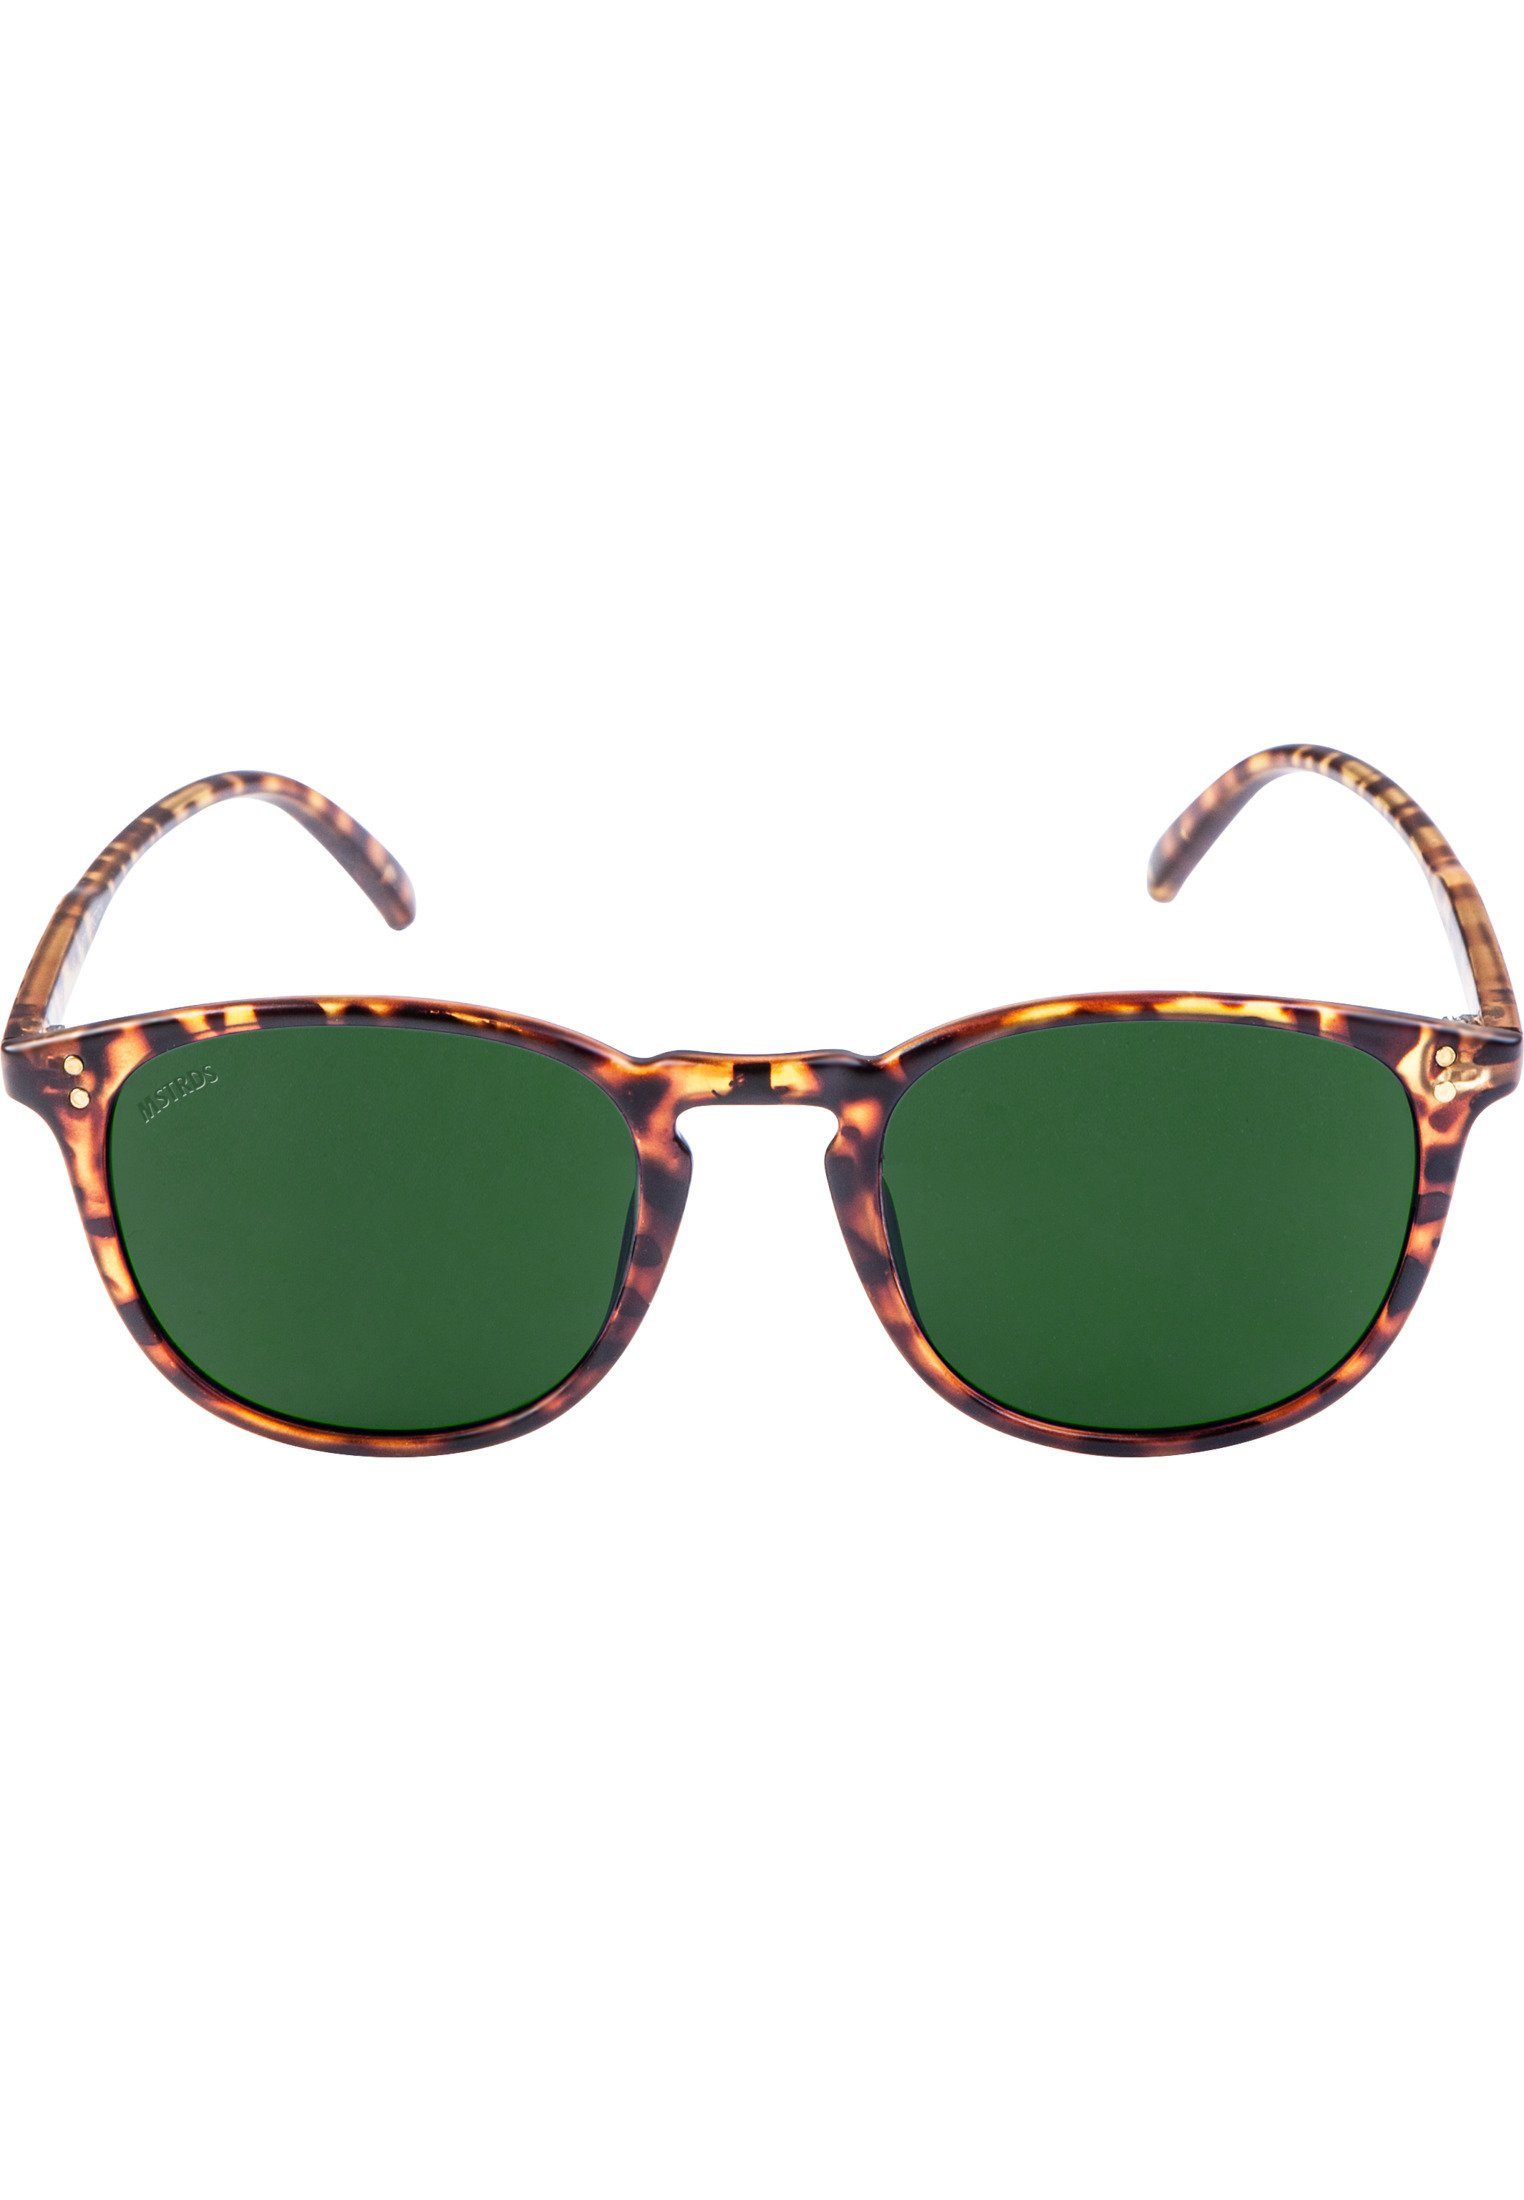 Sonnenbrille Arthur Sunglasses Accessoires MSTRDS havanna/green